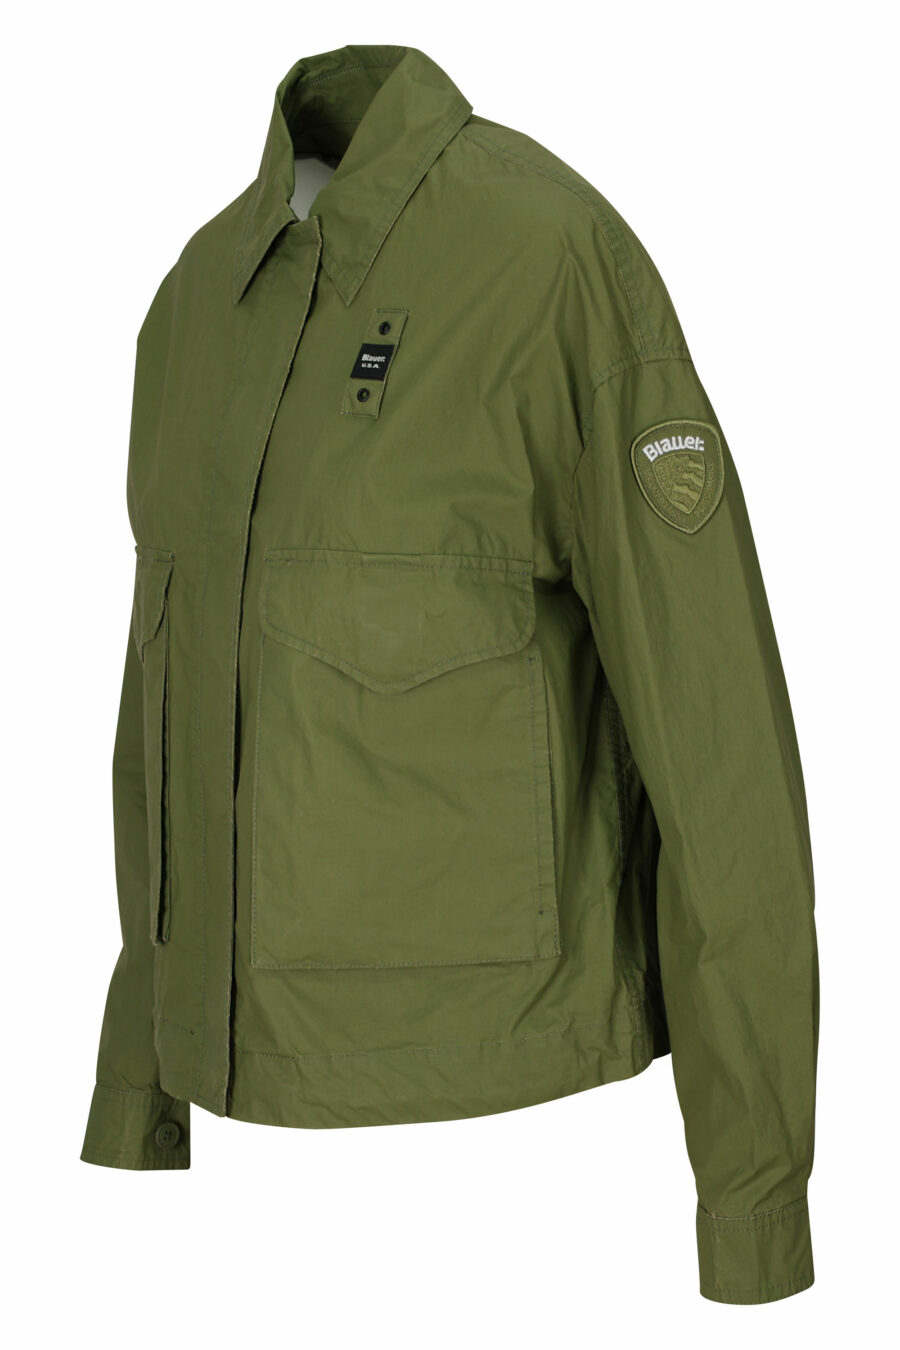 Chaqueta verde militar con bolsillos frontales y logo parche lateral - 8058610712600 1